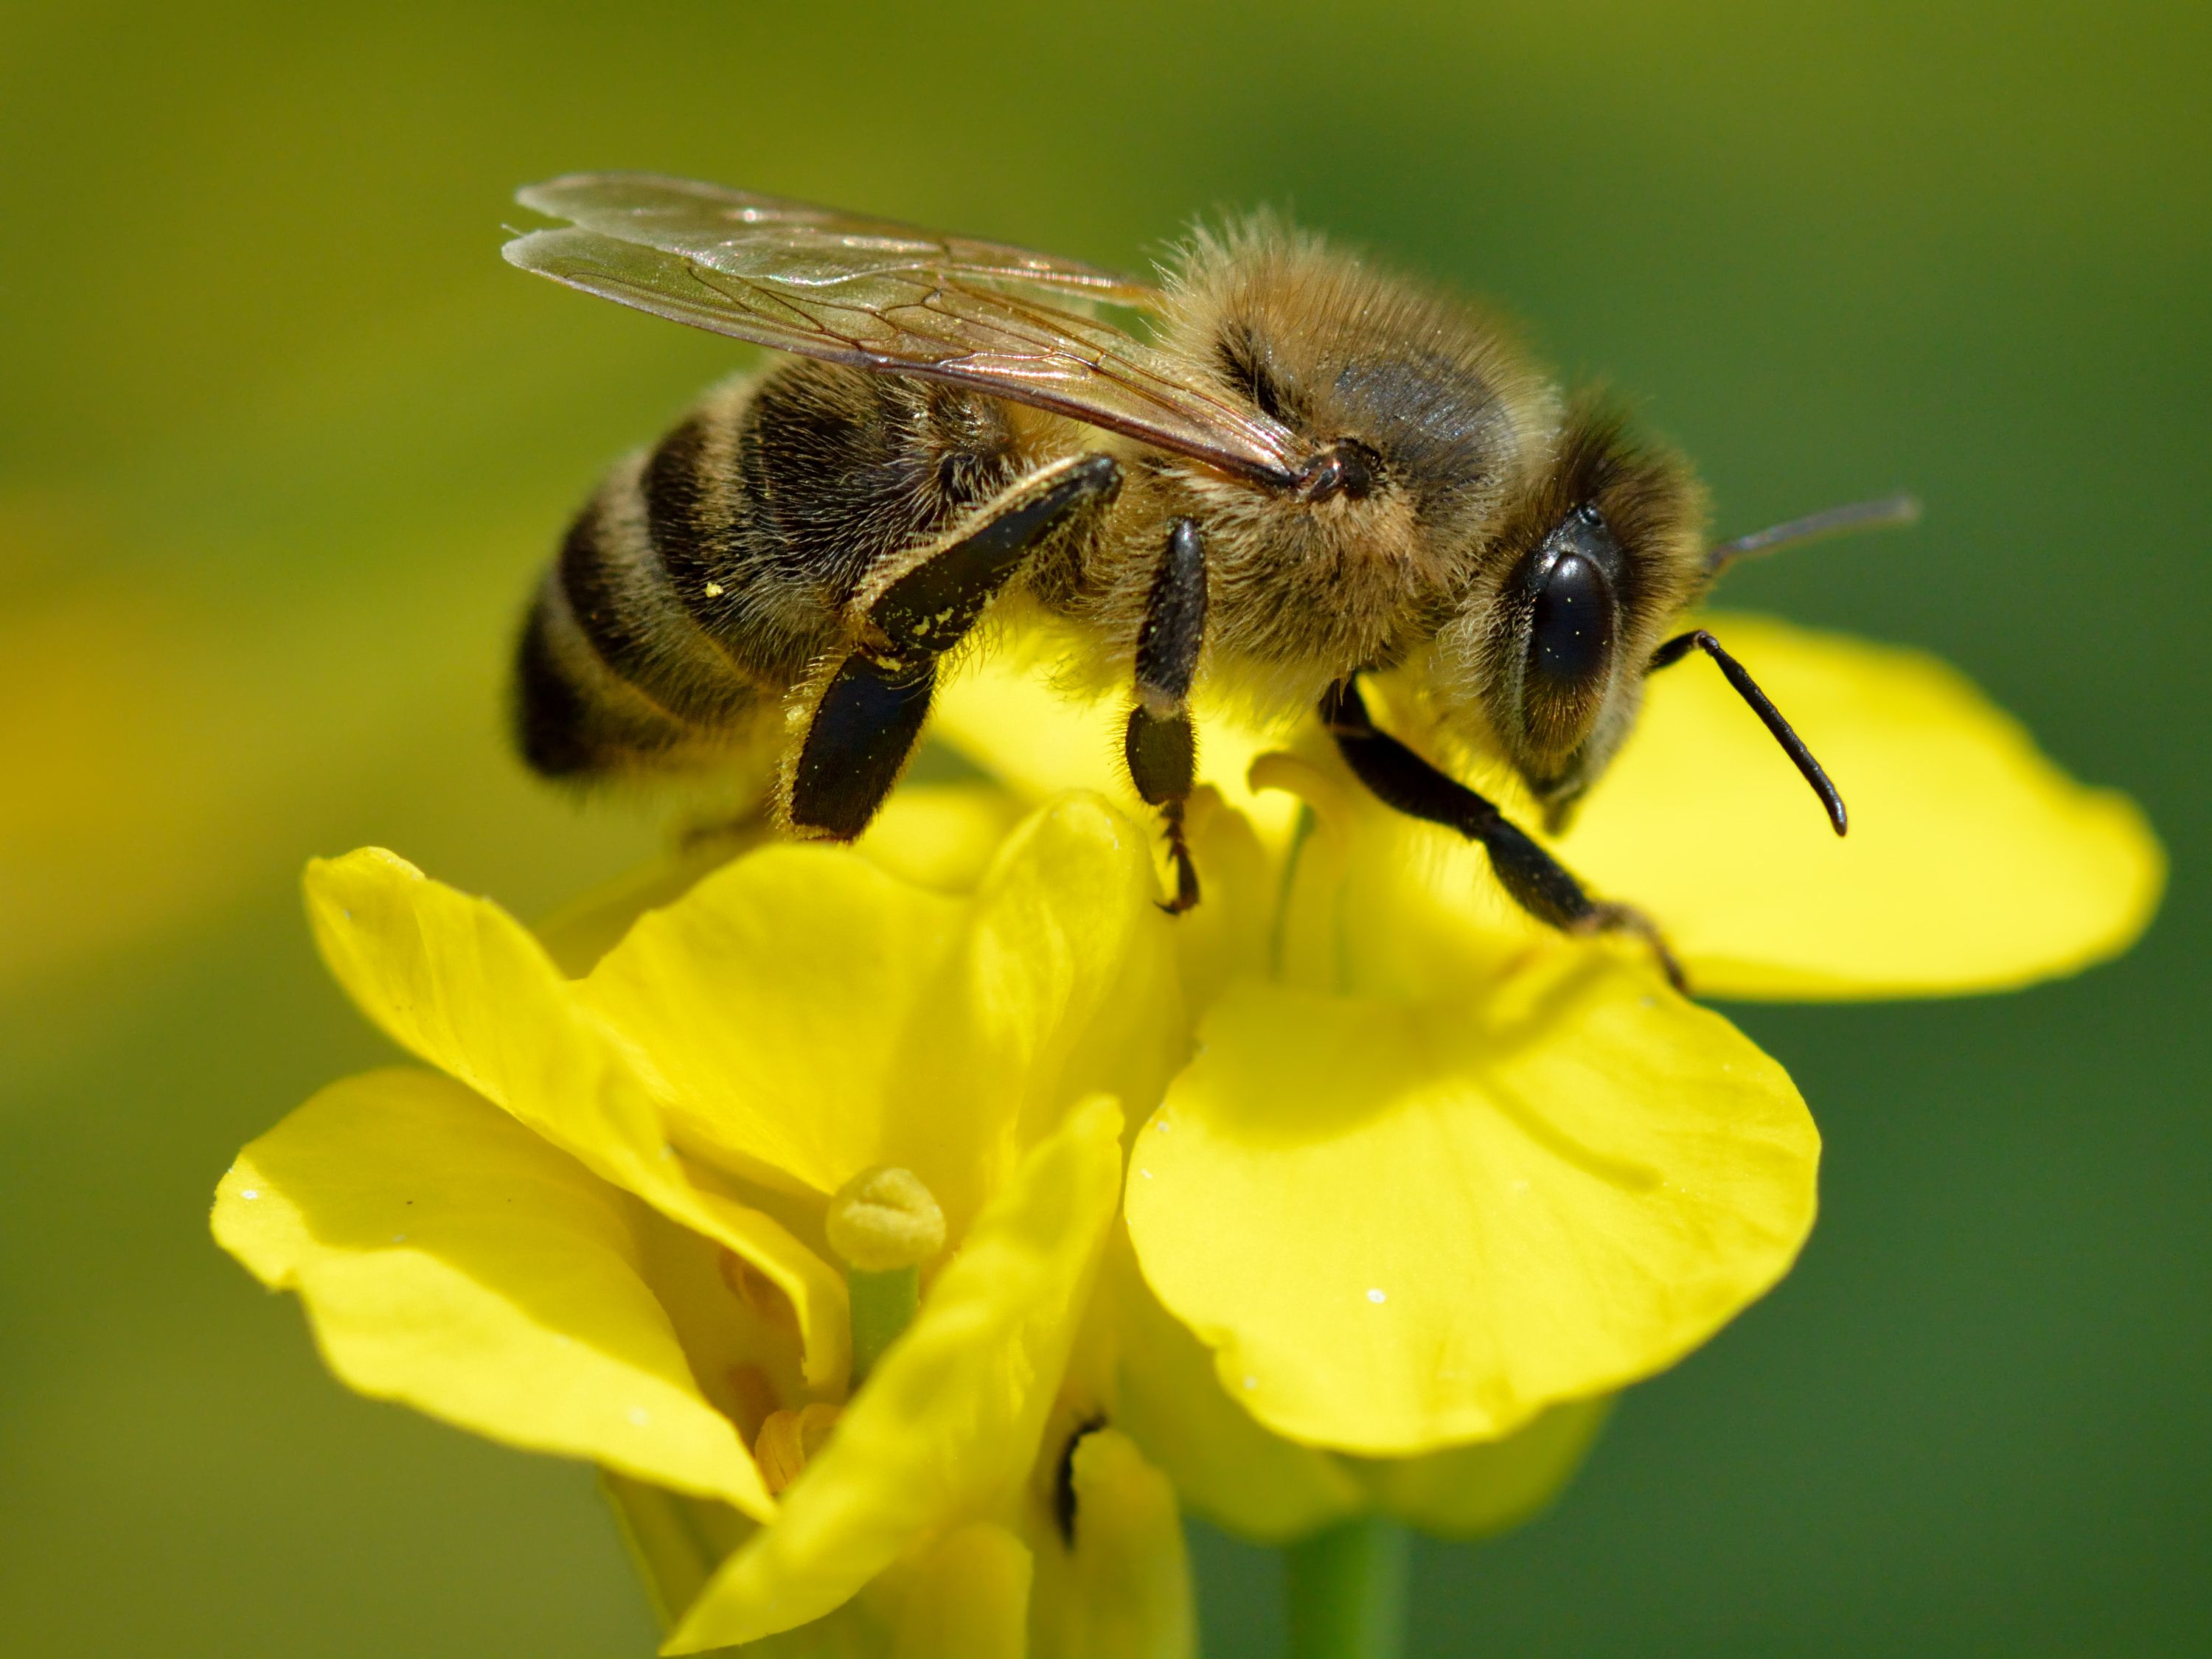 Con ong hiện thân của sự chăm chỉ đặc điểm hình ảnh chi tiết